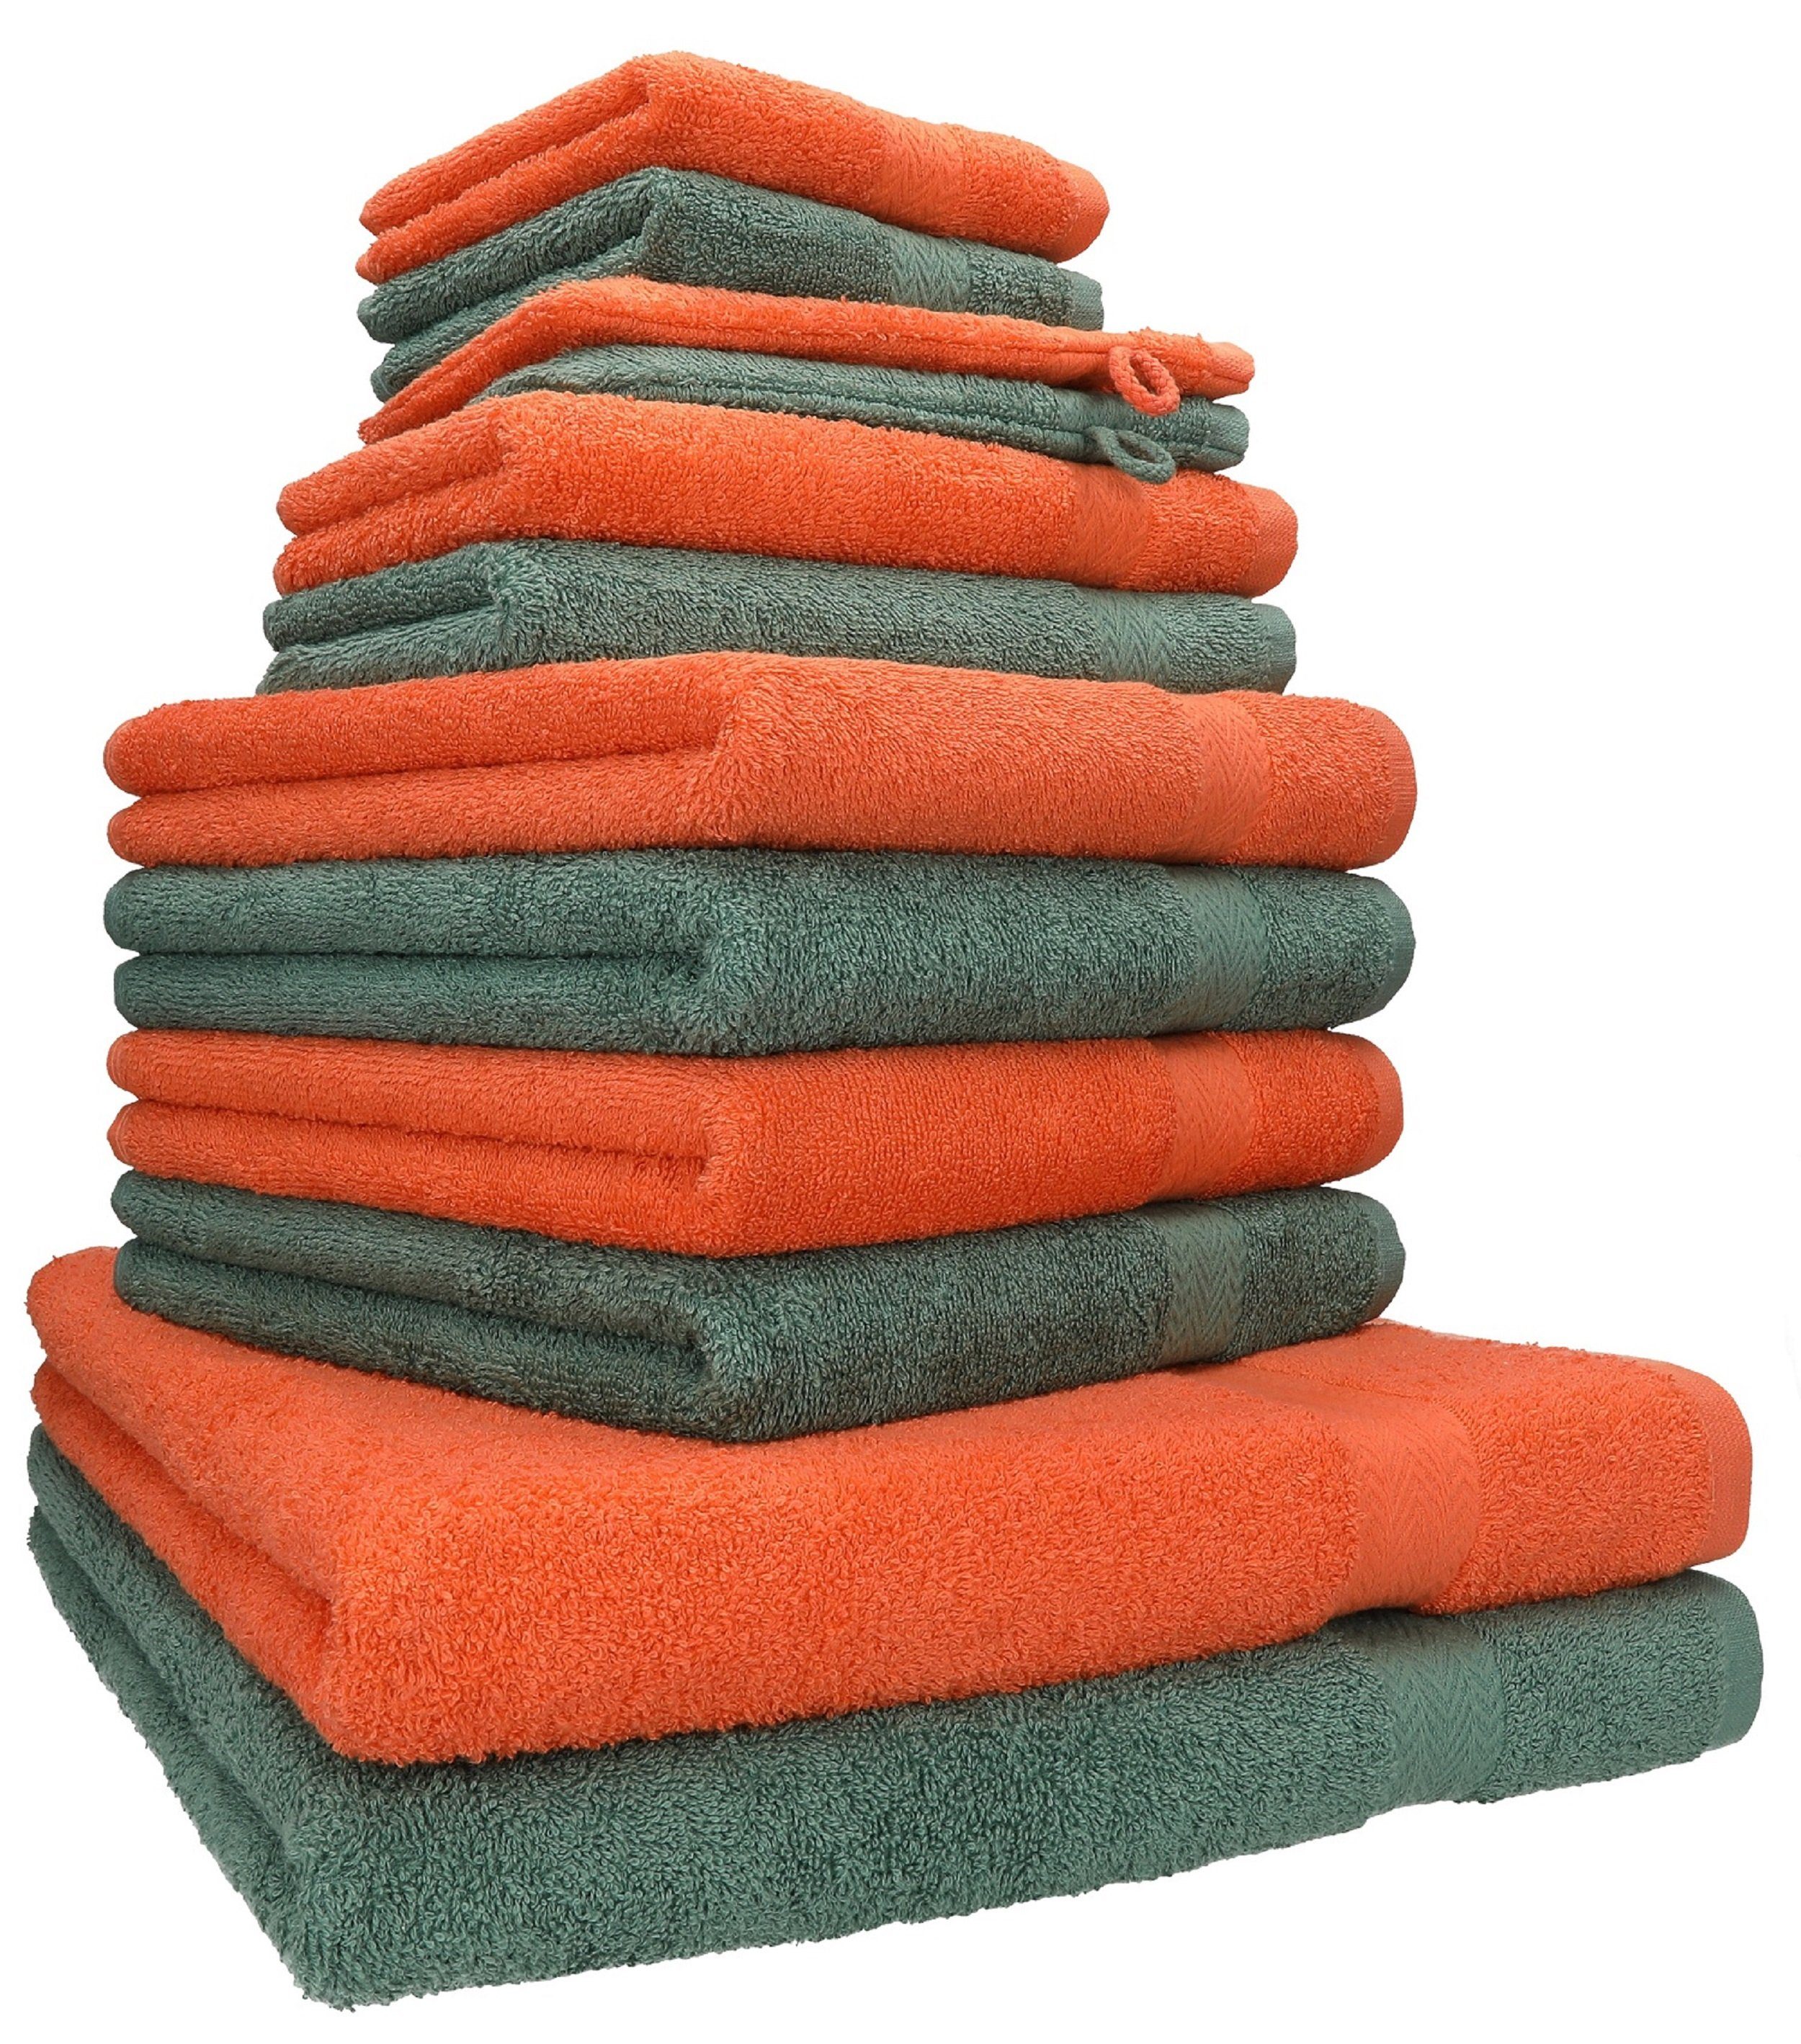 Betz Premium Handtuch Baumwolle, (12-tlg) 100% Handtuch Farbe blutorange/tannengrün, 12-tlg. Set Set